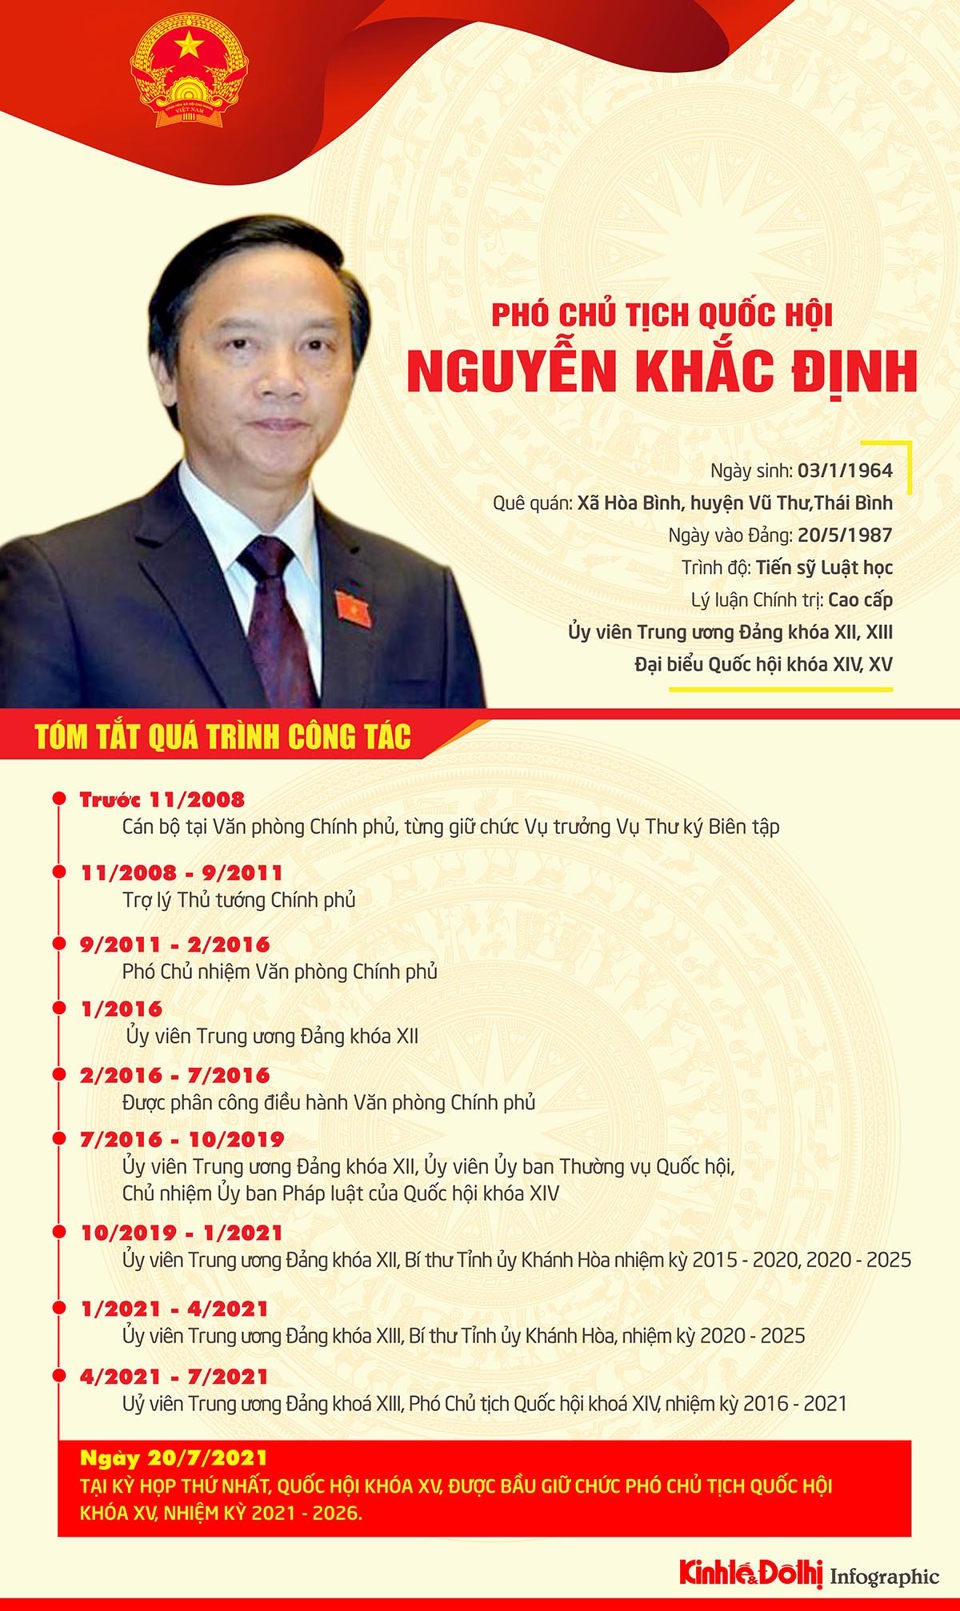 [Infographic] Chân dung Phó Chủ tịch Quốc hội khóa XV Nguyễn Khắc Định - Ảnh 1